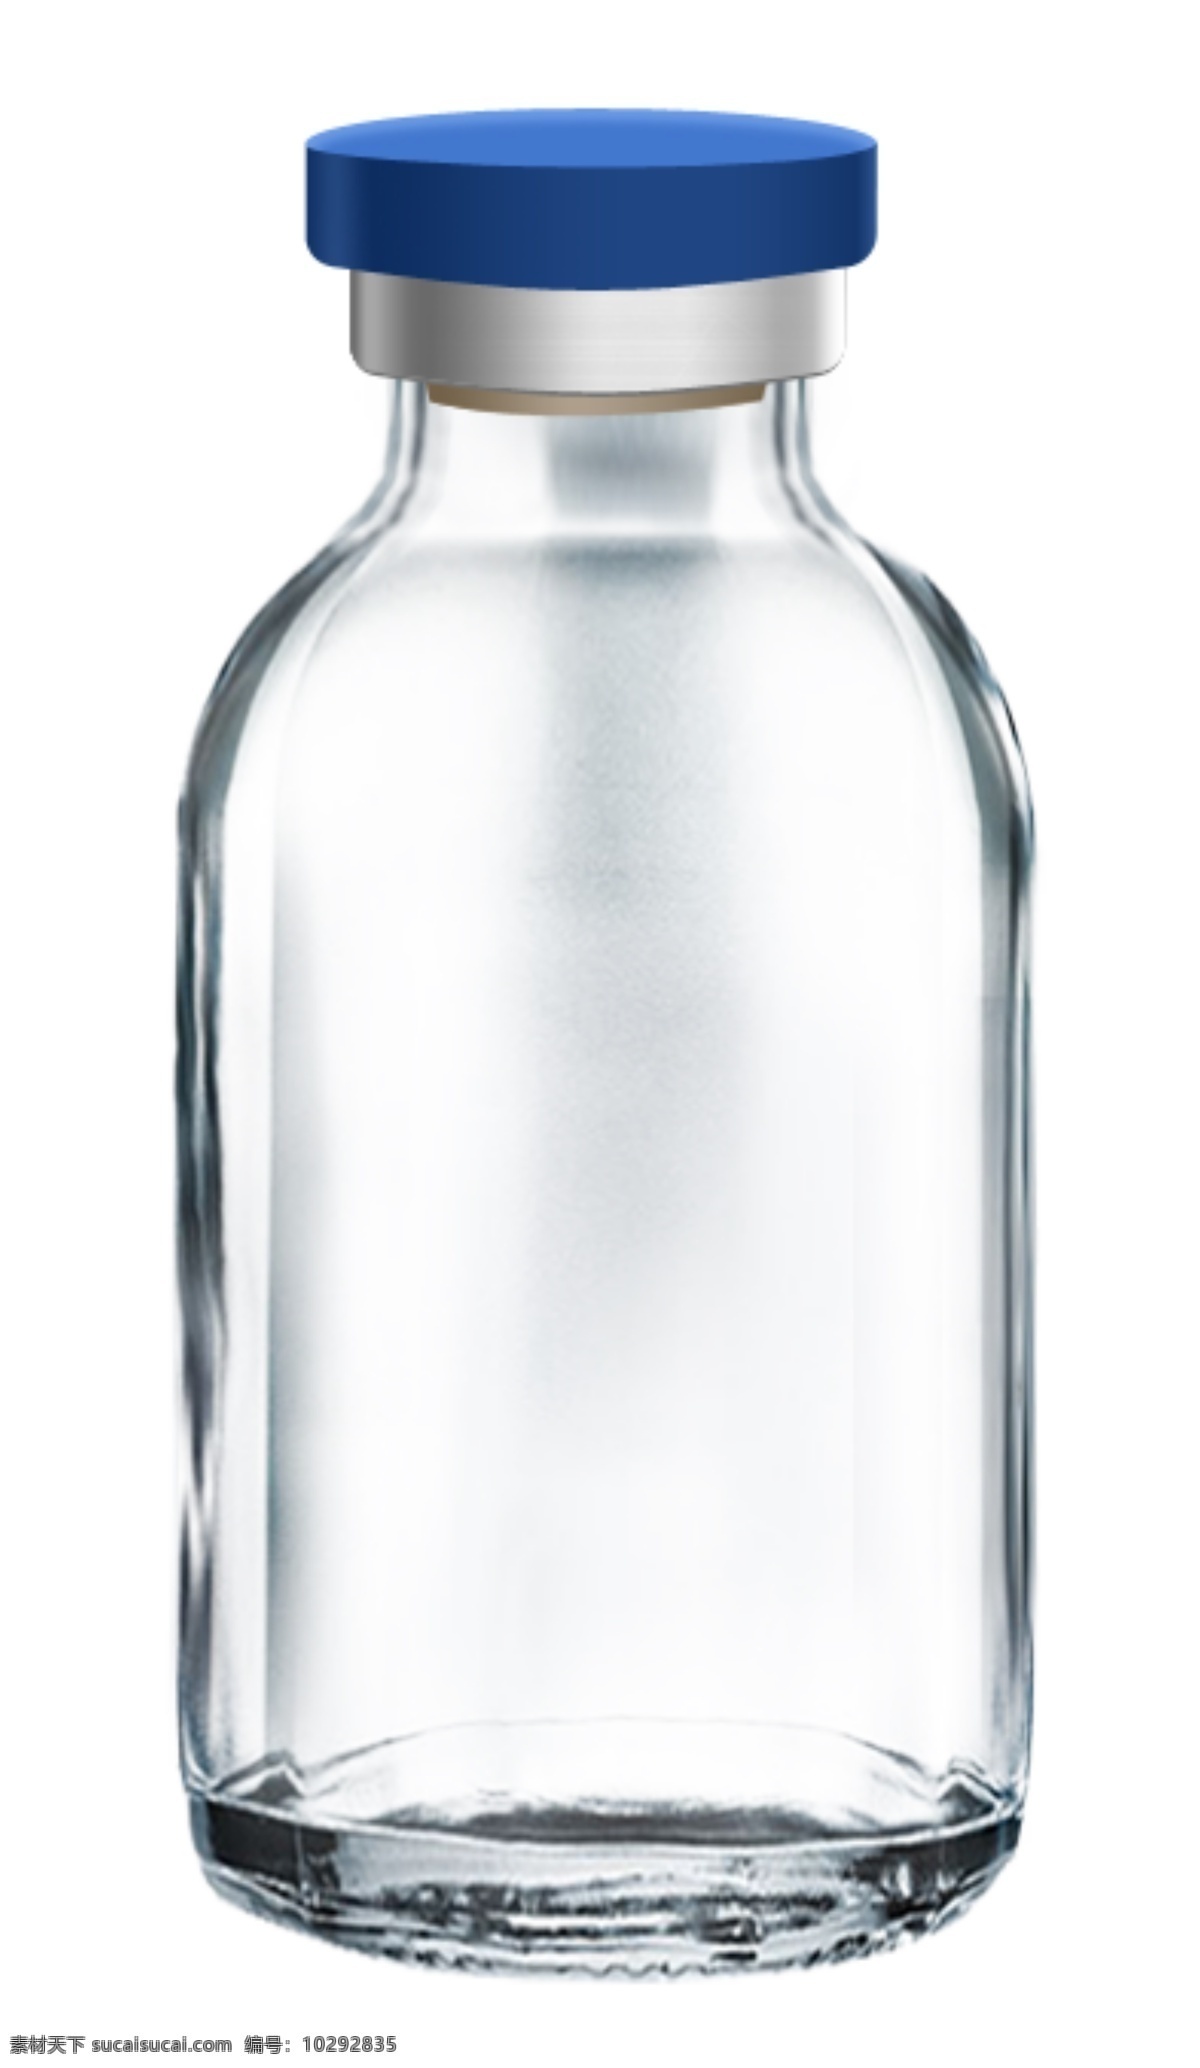 透明玻璃瓶 药瓶子 透明瓶子 玻璃 药品 瓶子 透明玻璃杯 药品药物 空瓶子 玻璃品 透明牛奶杯 玻璃酒杯 玻璃水杯 时尚水杯 玻璃容器 玻璃瓶 psd分层 分层